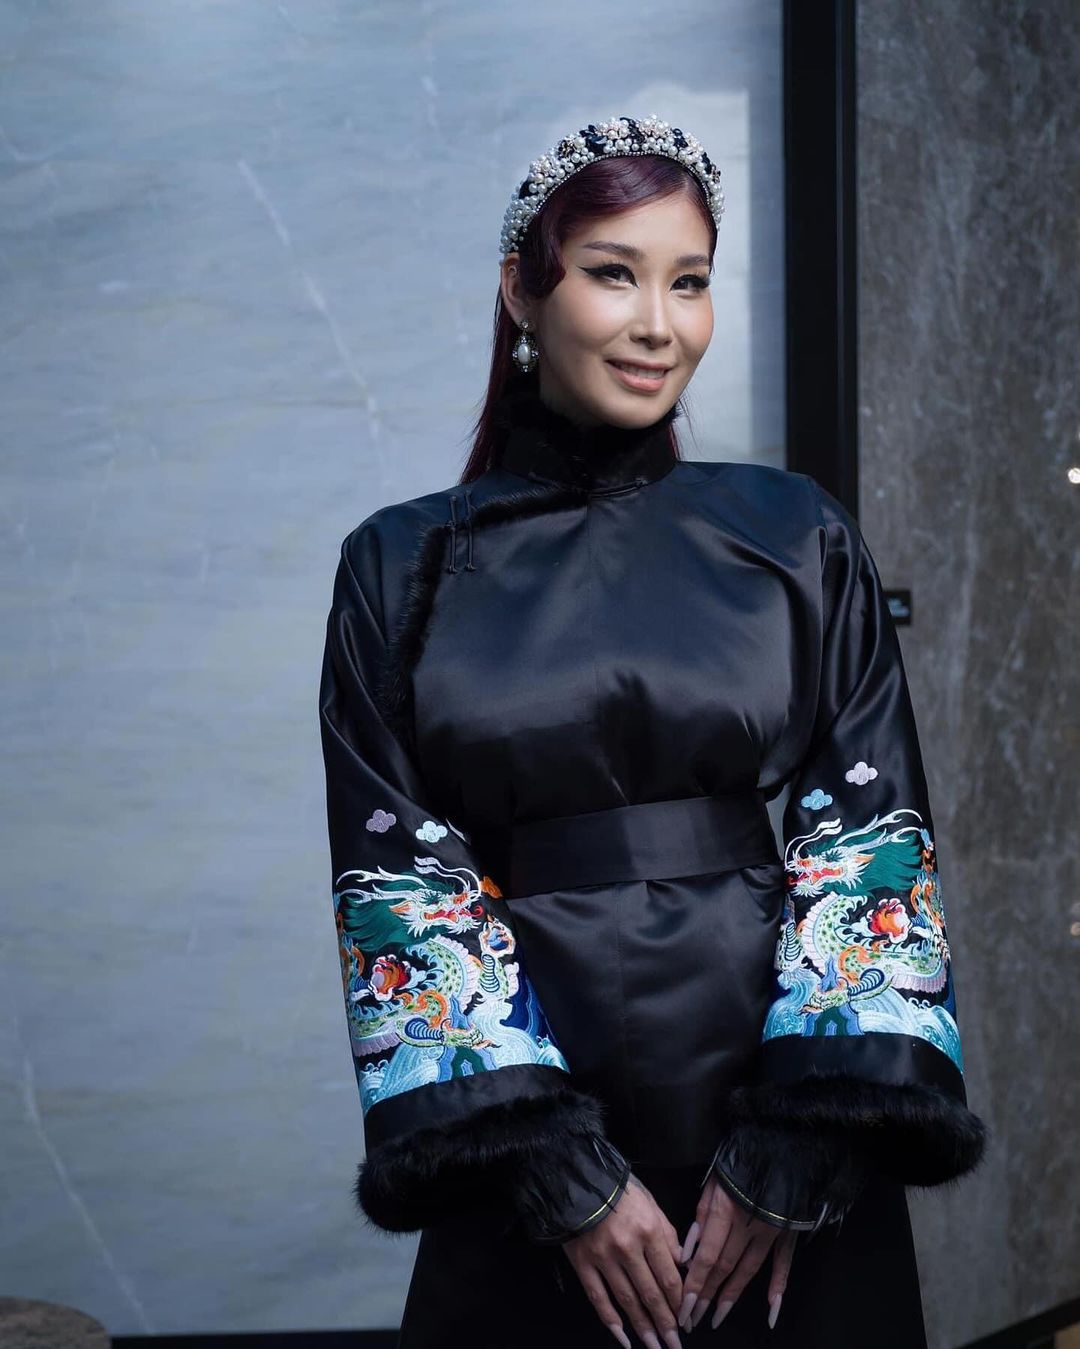 Tugs Mongolian women wear black deel